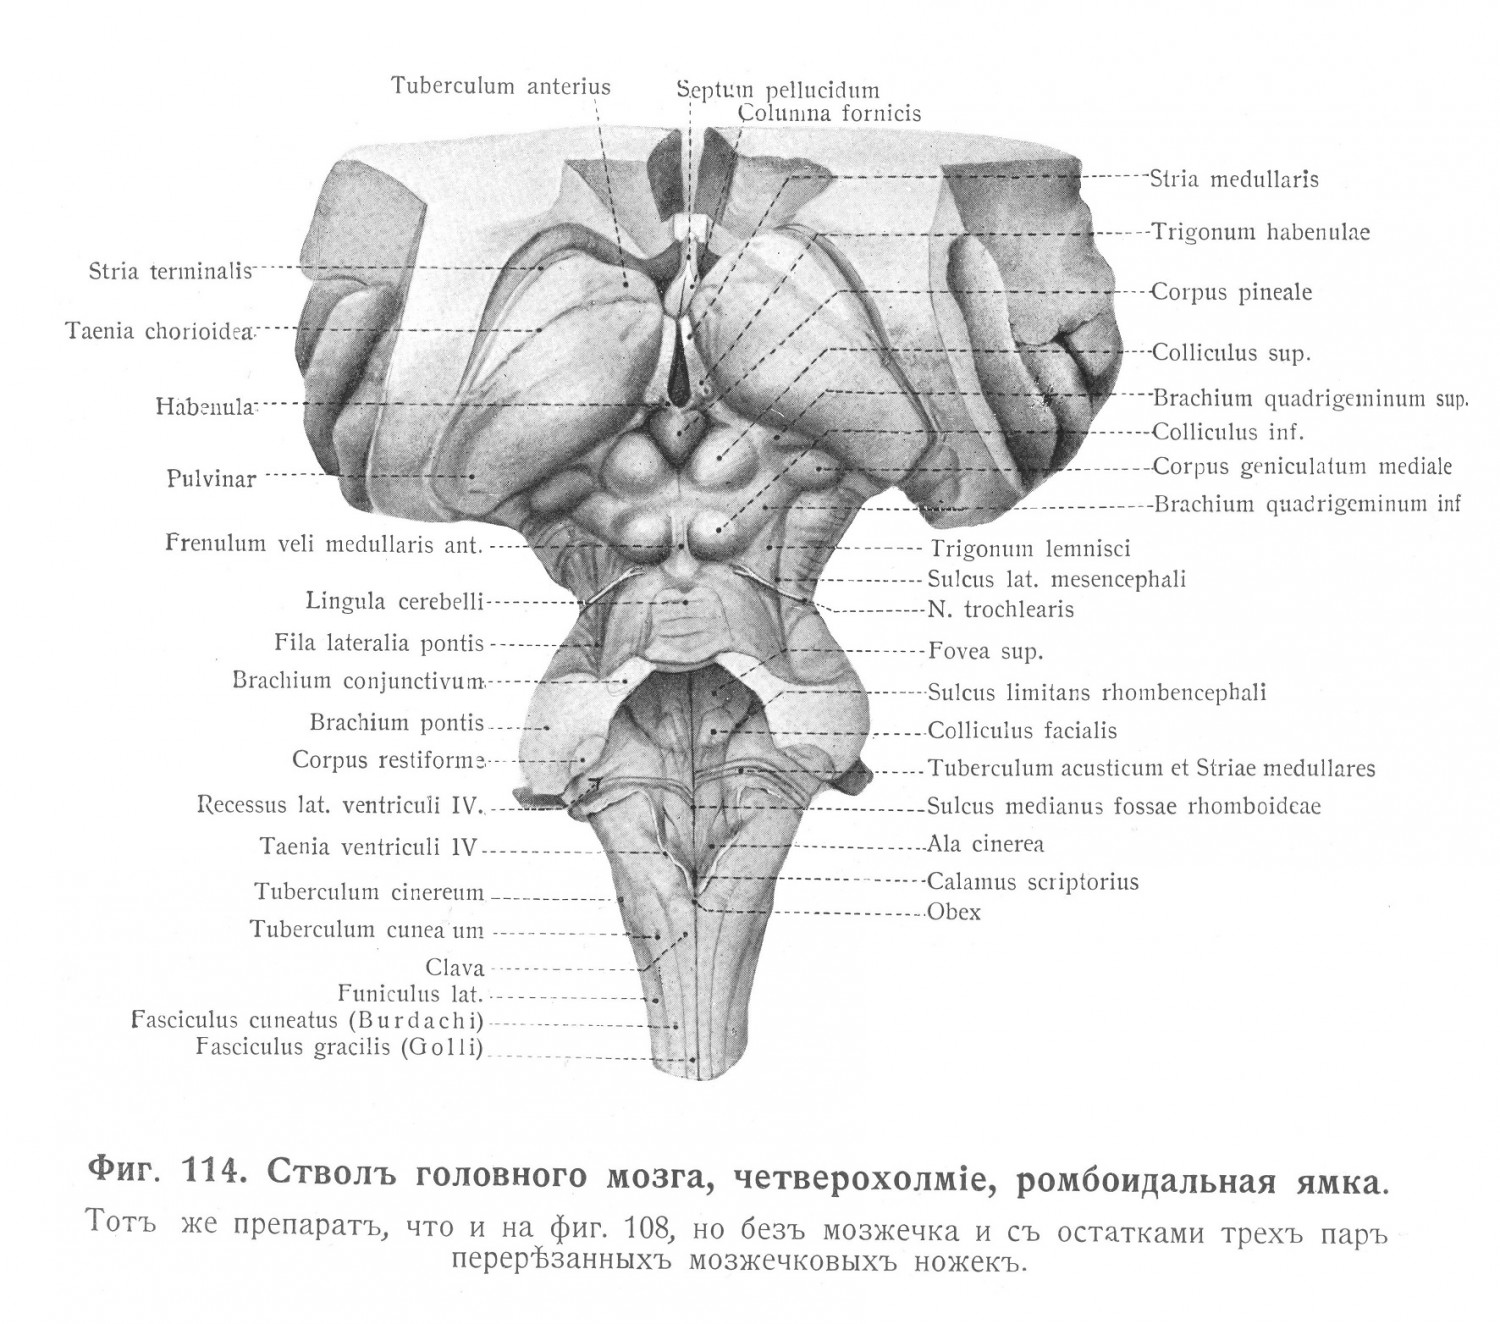 Ствол головного мозга, четверохолмие, ромбоидальная ямка